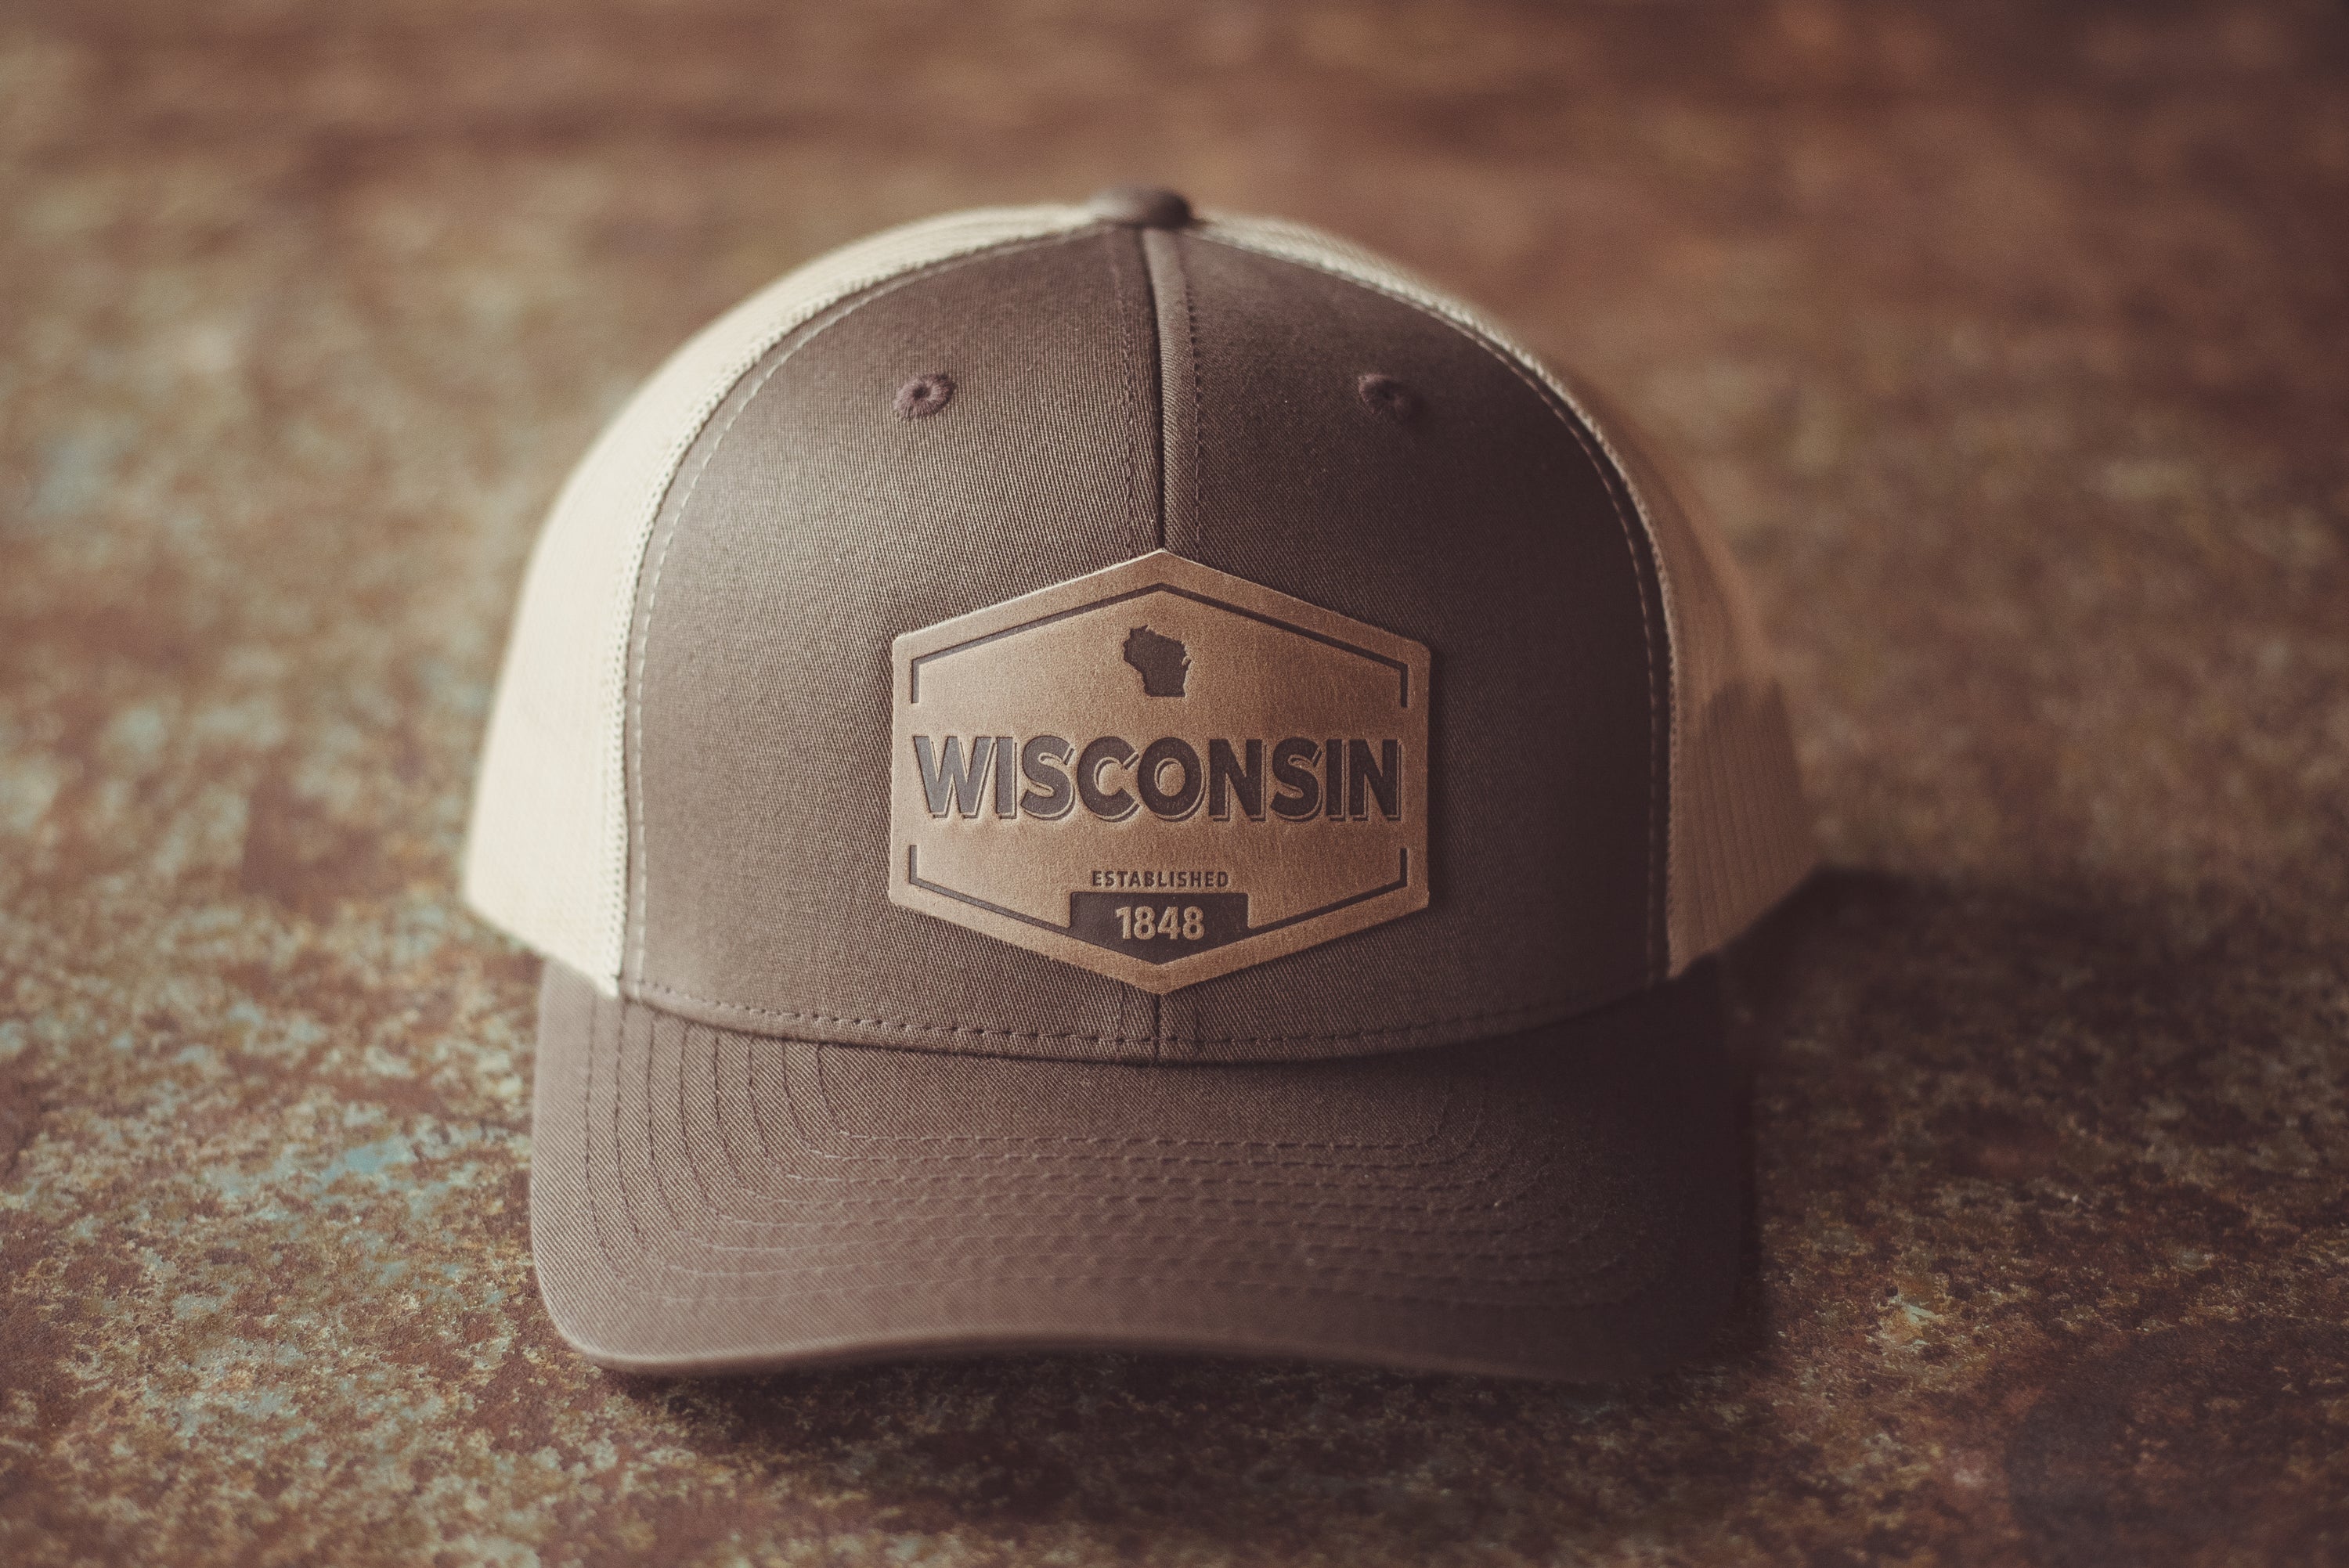 Wisconsin Established Hat